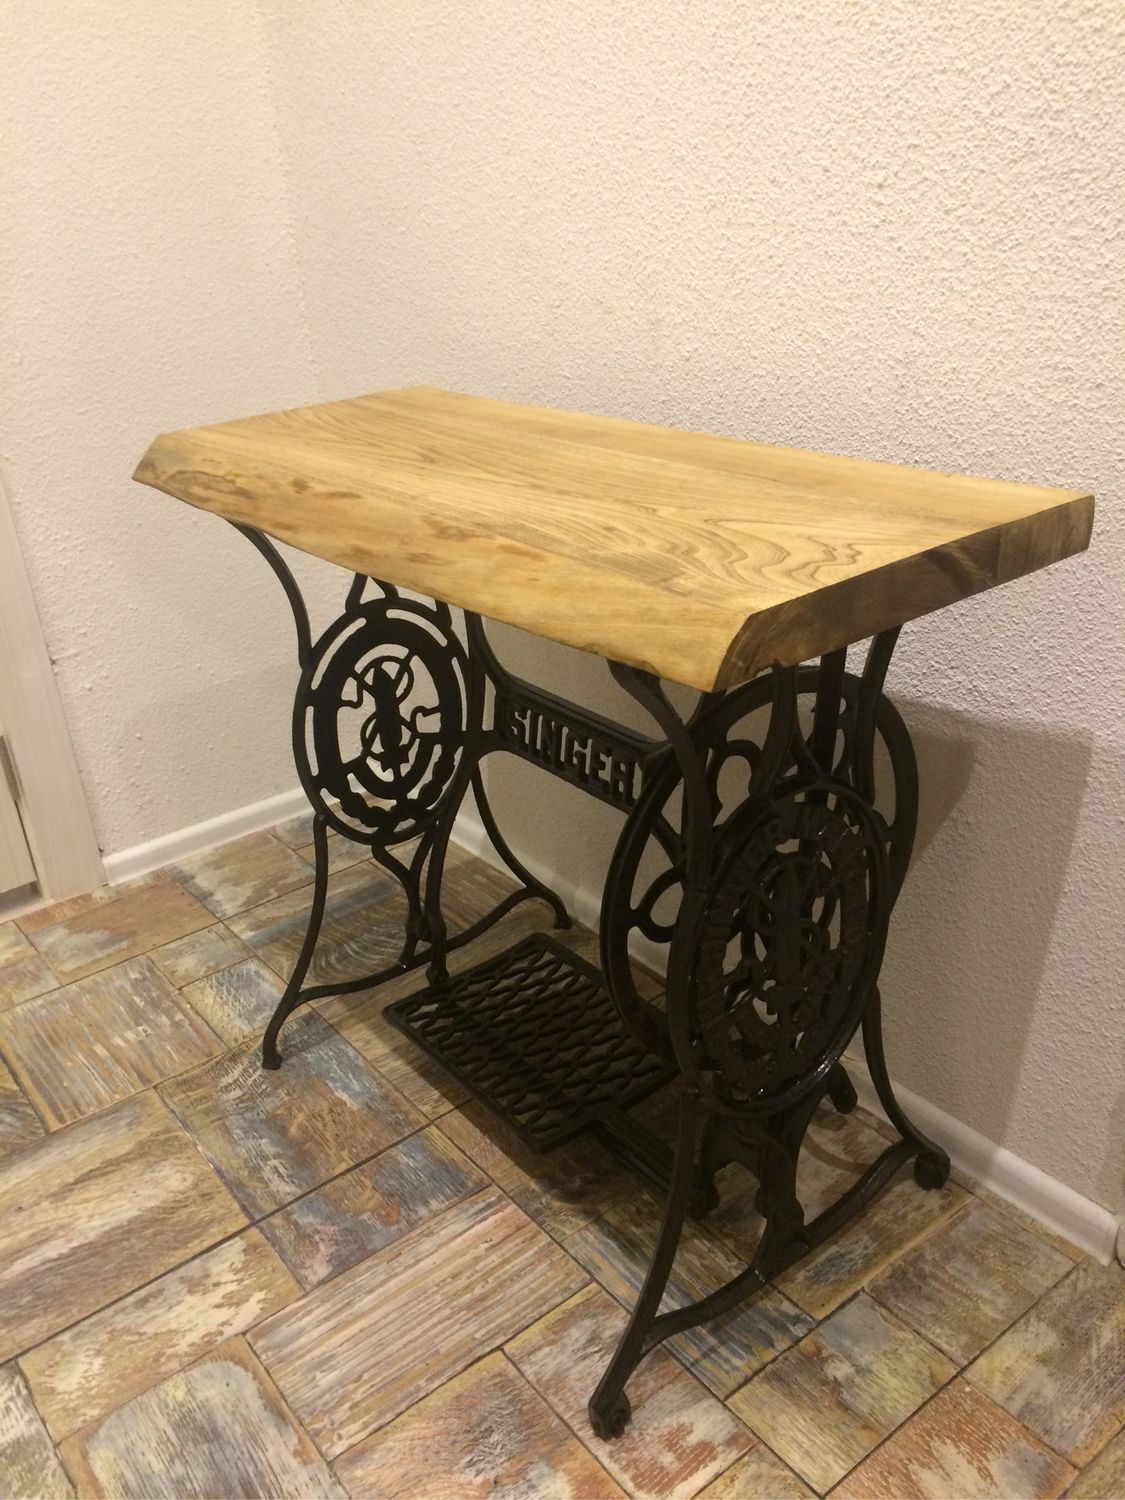 столик на станине от швейной машинки